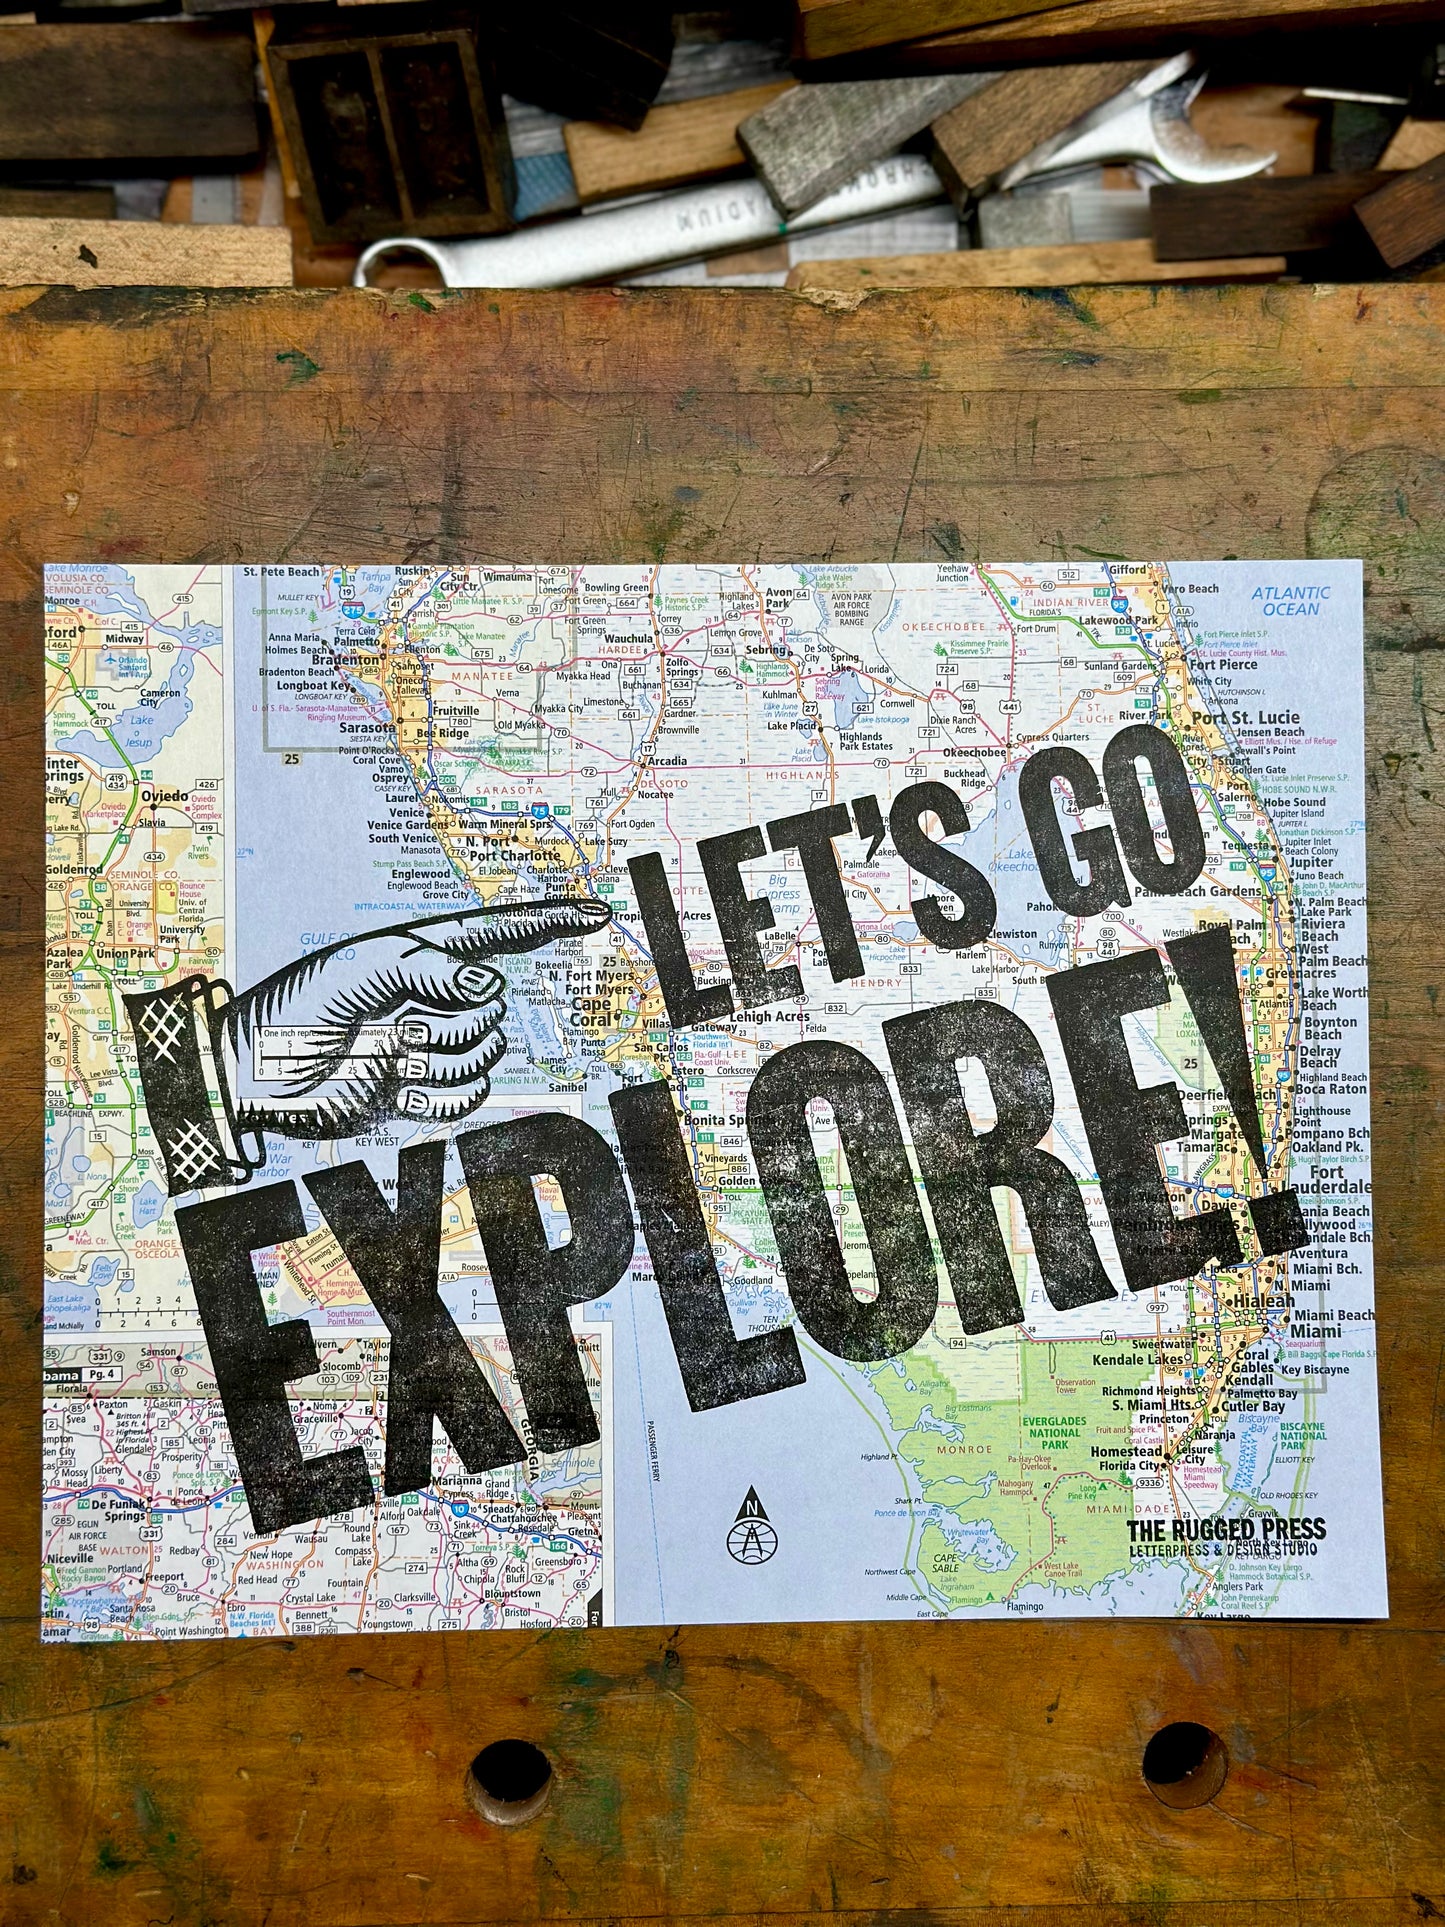 Let's Go Explore!